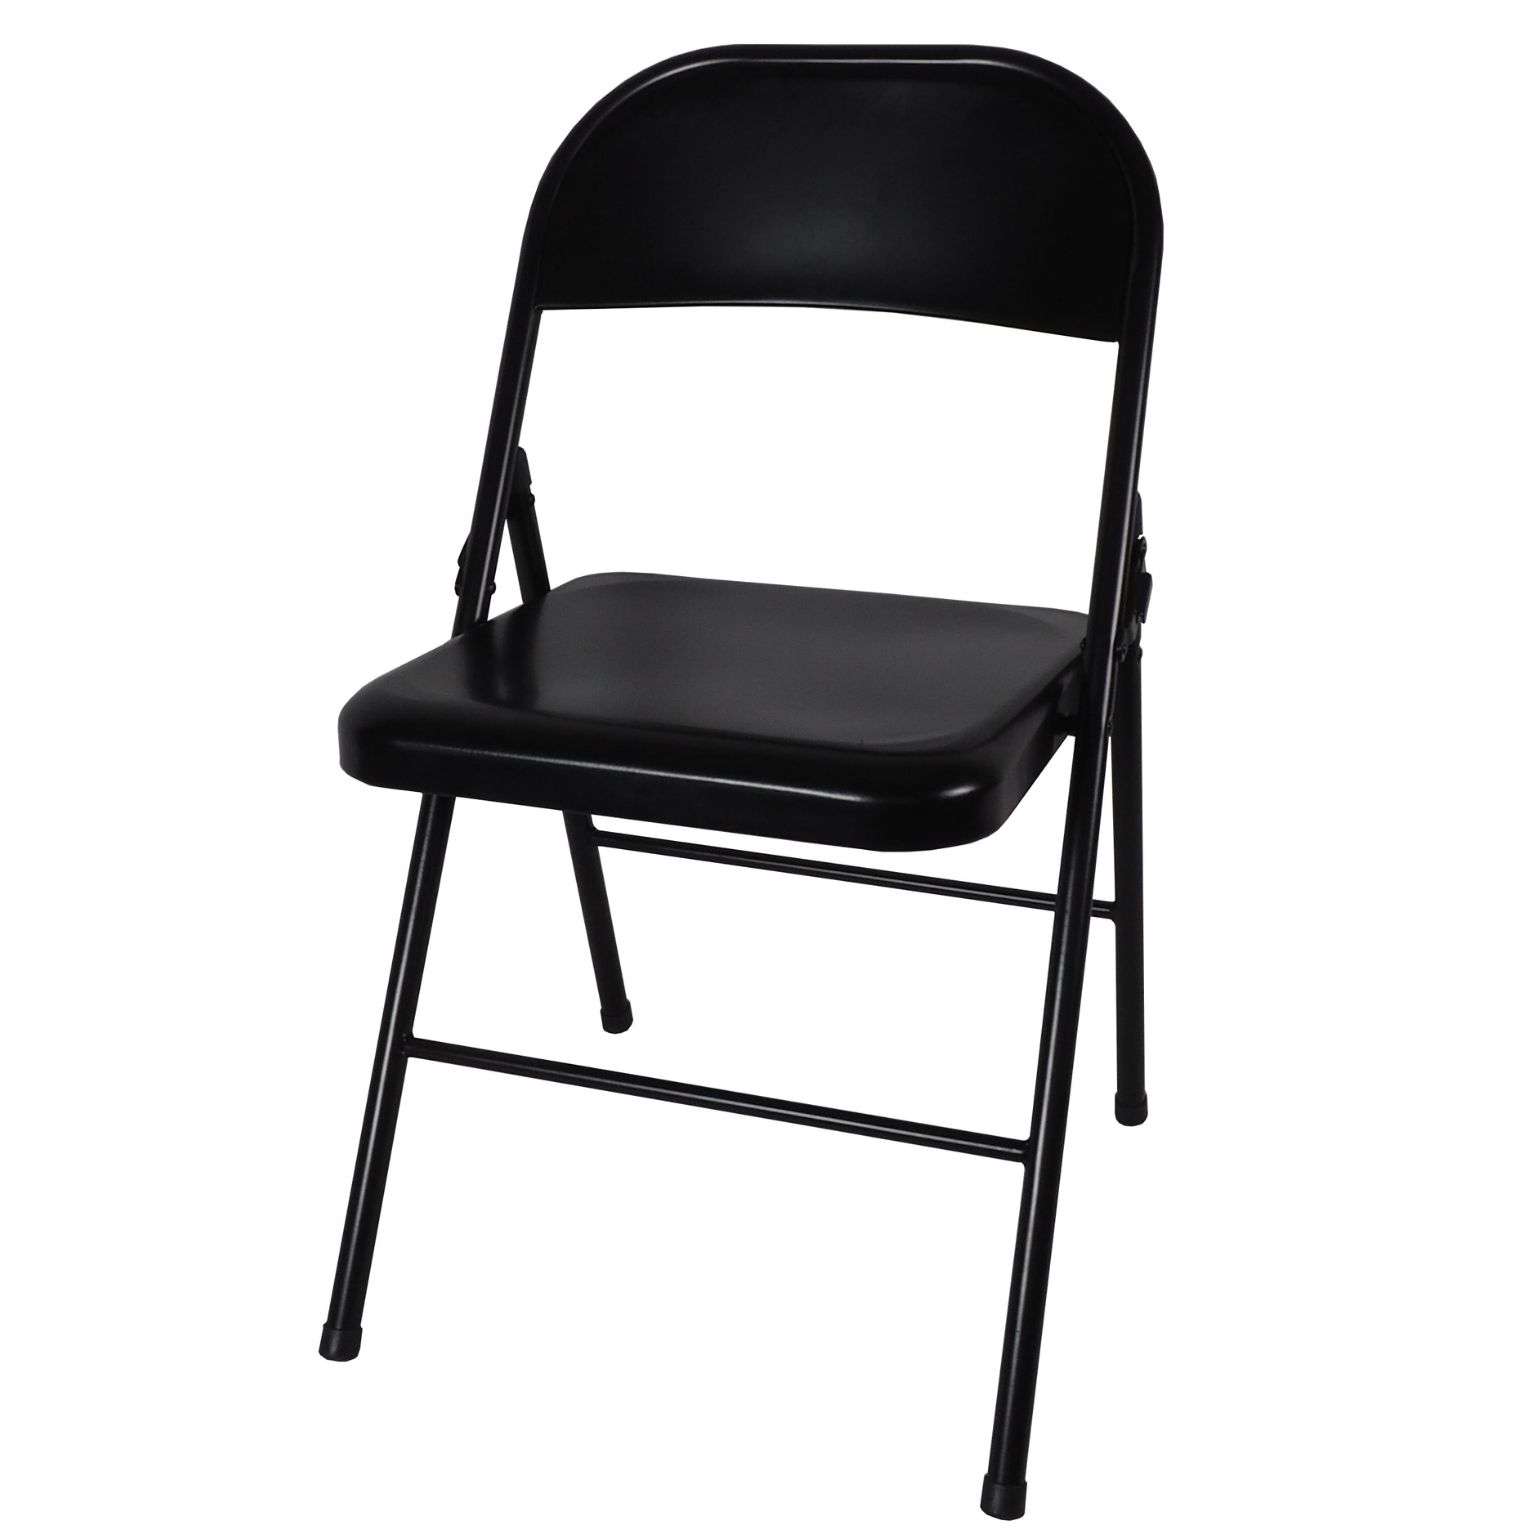 Chair Metal Black